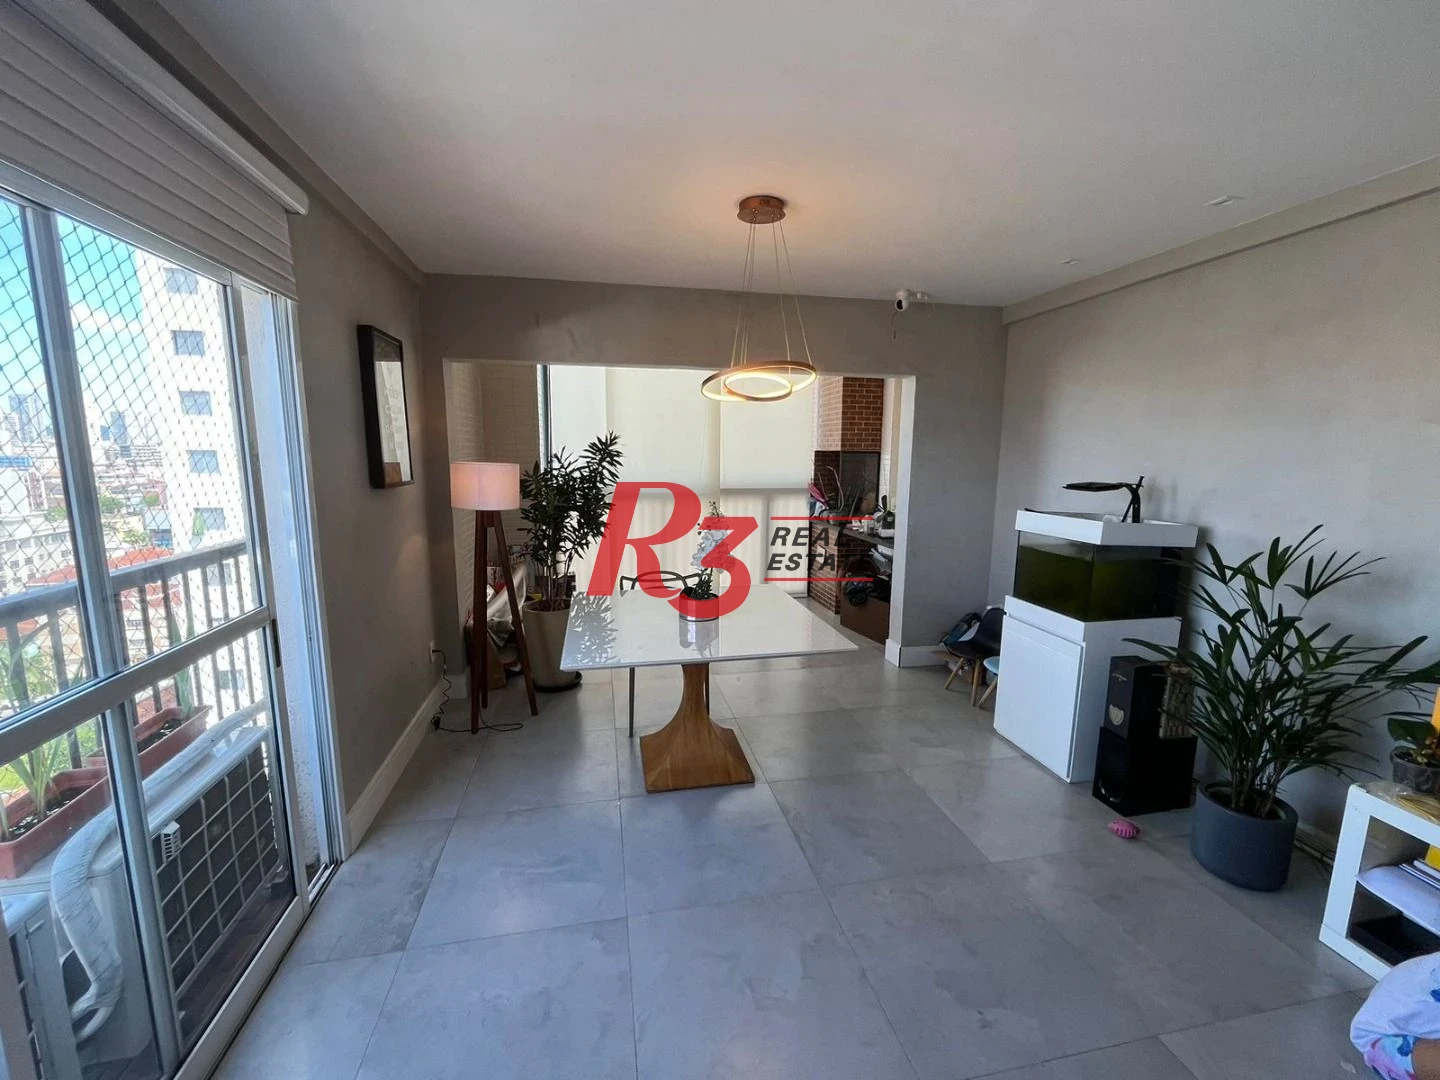 Apartamento Duplex com 3 dormitórios à venda, 131 m² por R$ 940.000,00 - Encruzilhada - Santos/SP